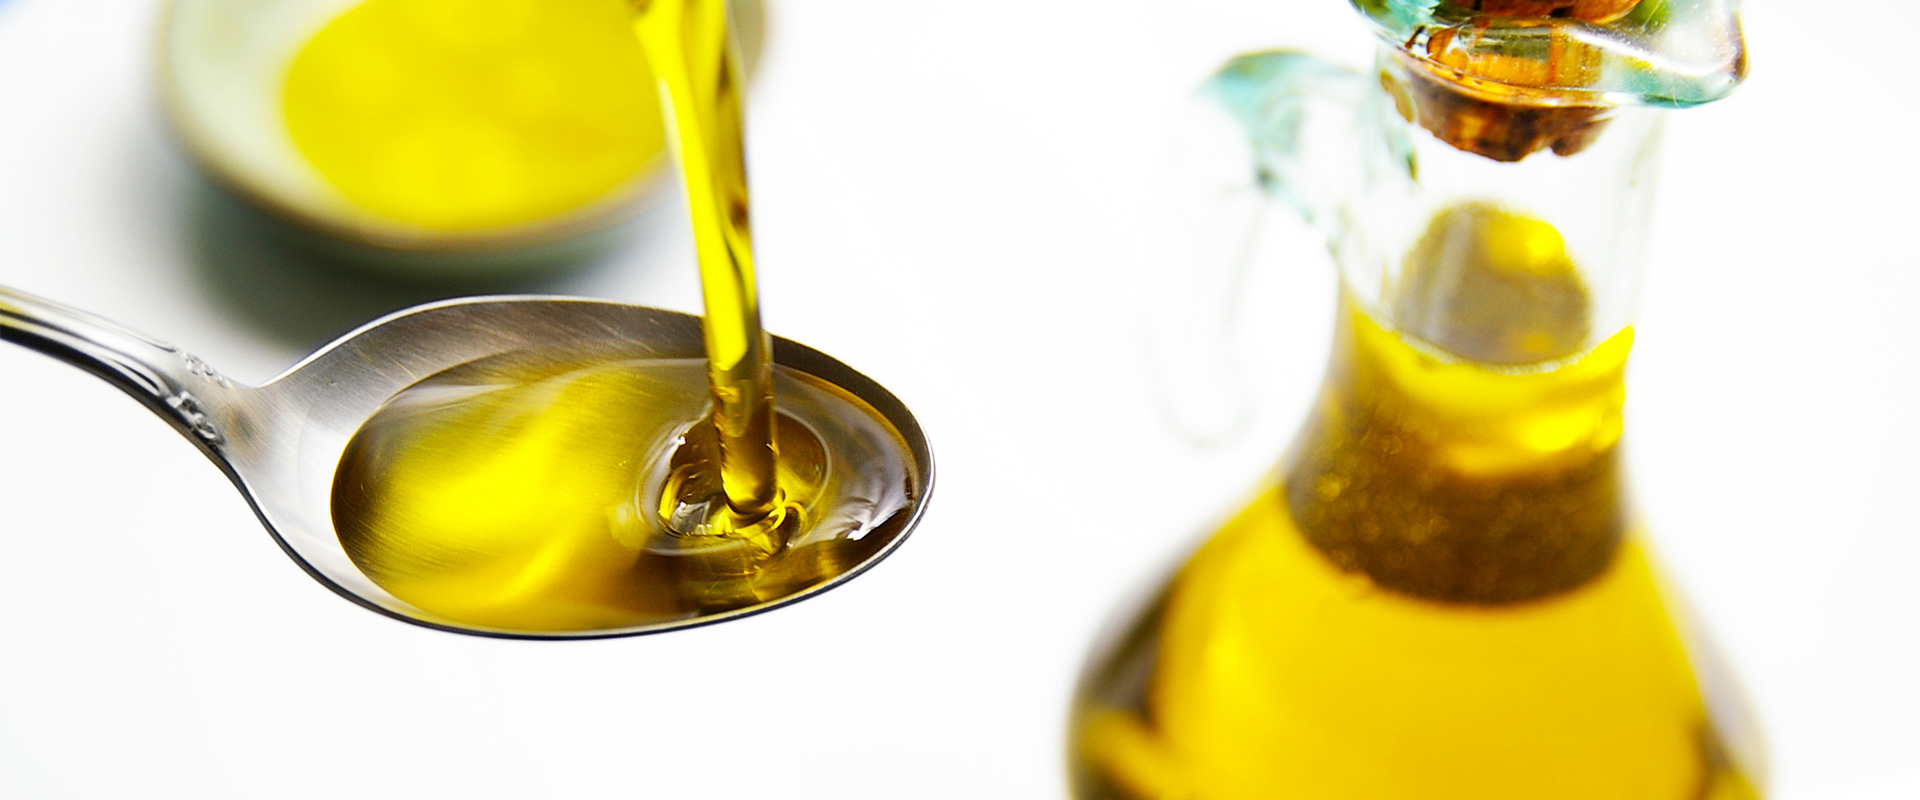 L'acidità libera nell'olio di oliva